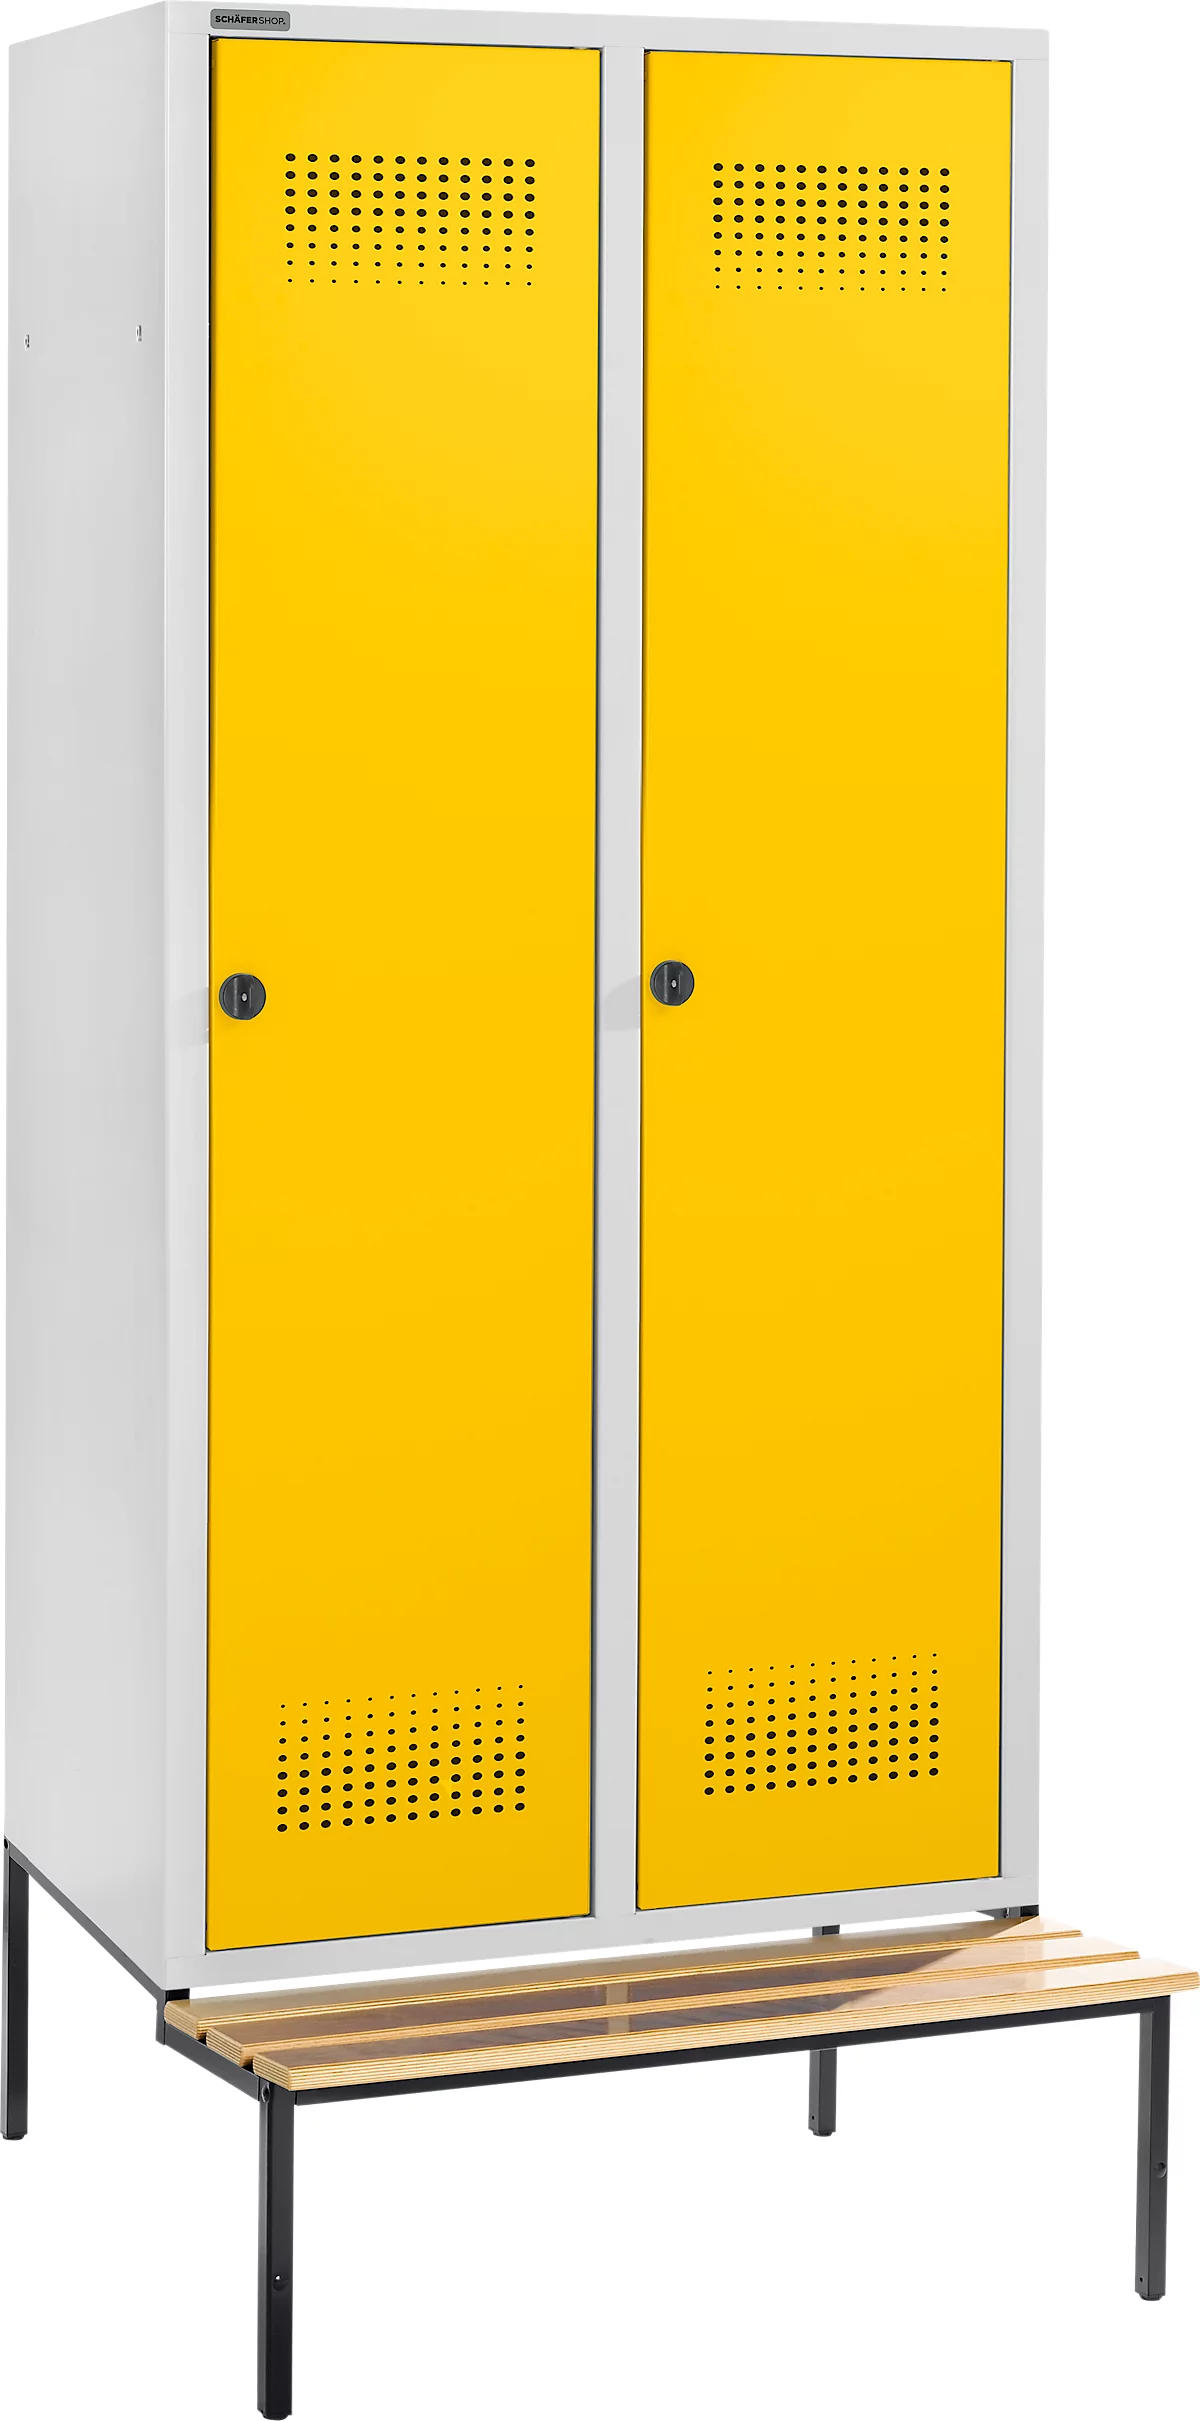 Schäfer Shop Genius Taquilla con banco, 2 compartimentos, anchura compartimento 400 mm, cierre de pasador giratorio de seguridad, gris luminoso/amarillo